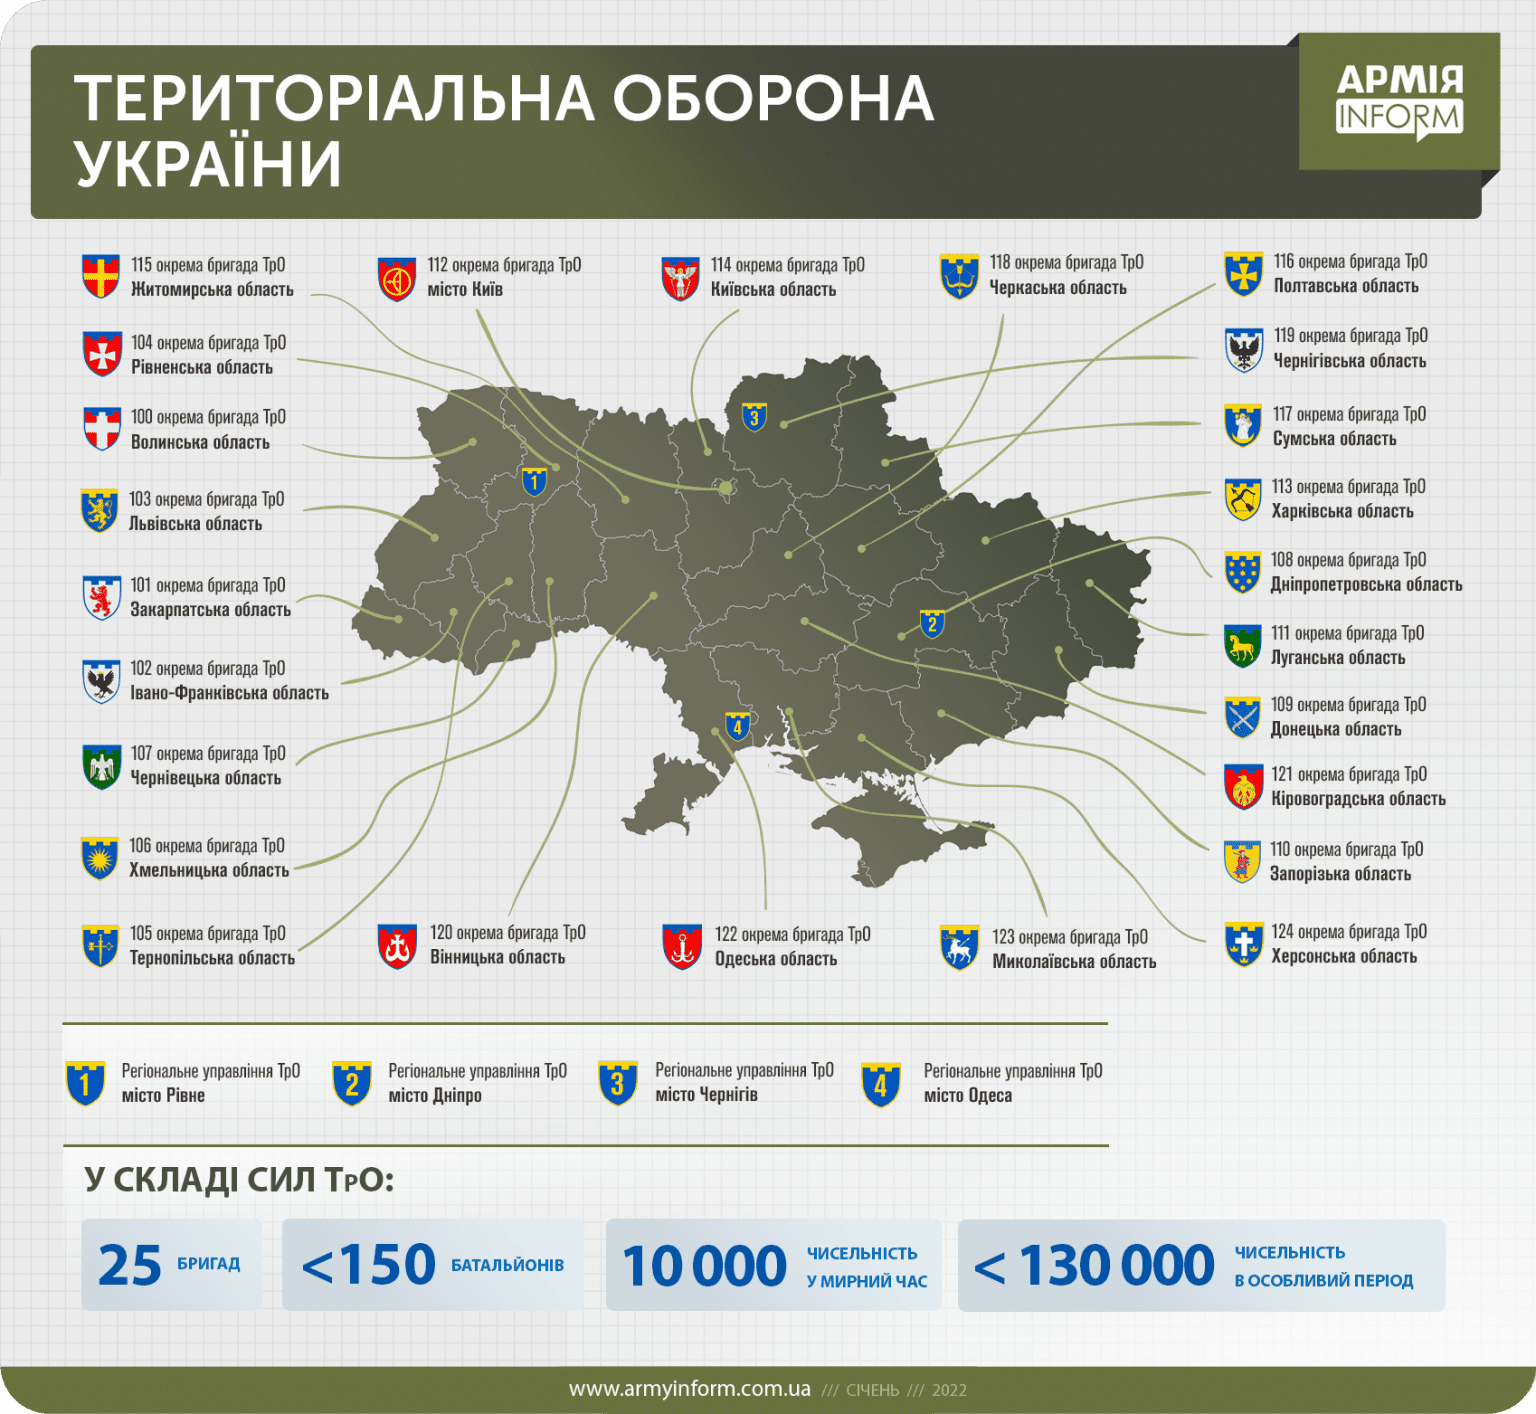 Бригади територіальної оборони України (ТРО) станом на січень 2022 рік